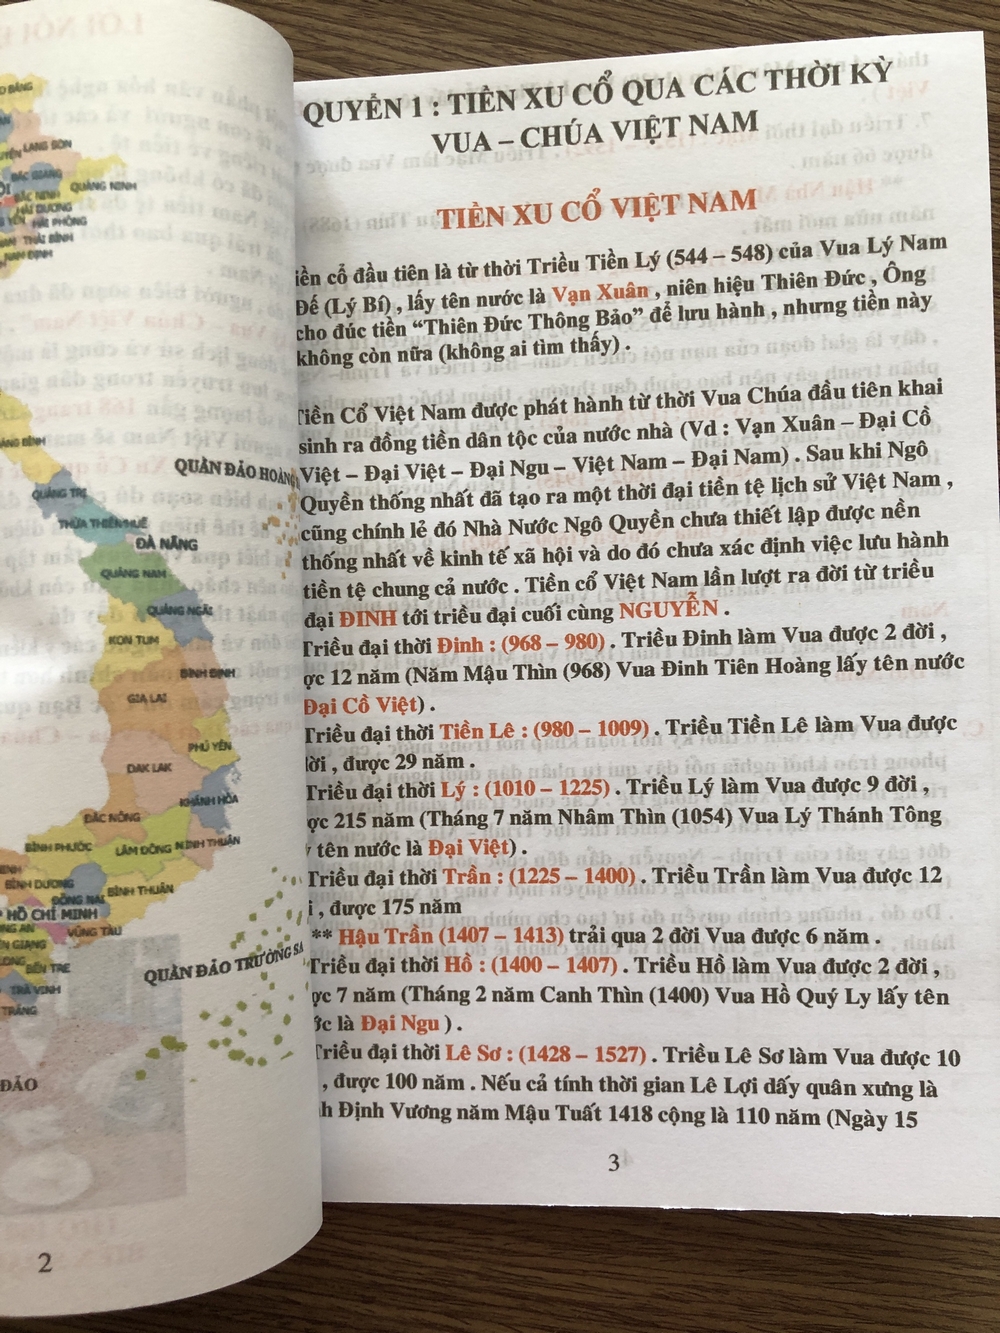 Cuốn Tiền xu cổ qua các thời kỳ vua chúa Việt Nam, đầy đủ và chính xác, do nhà sưu tầm lâu năm tập hợp làm tài liệu tra cứu